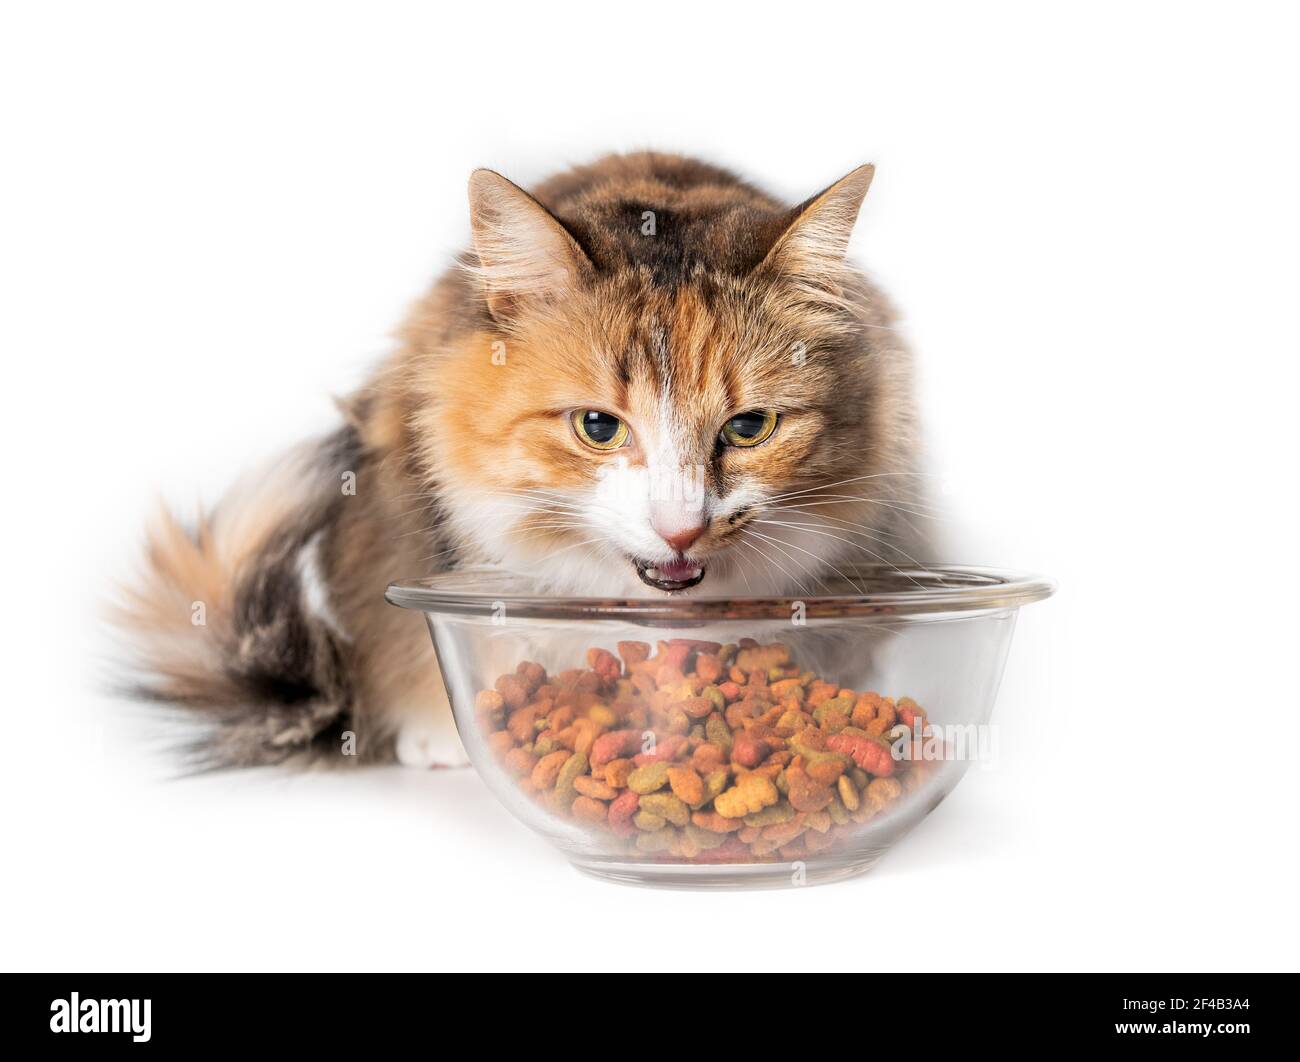 Katze essen Kibbles aus einer Schüssel. Niedliche Kitty mit Mund offen hinter einem großen Glasschale mit trockenem Tierfutter gefüllt. Konzept für Überfütterung oder Überernährung c Stockfoto